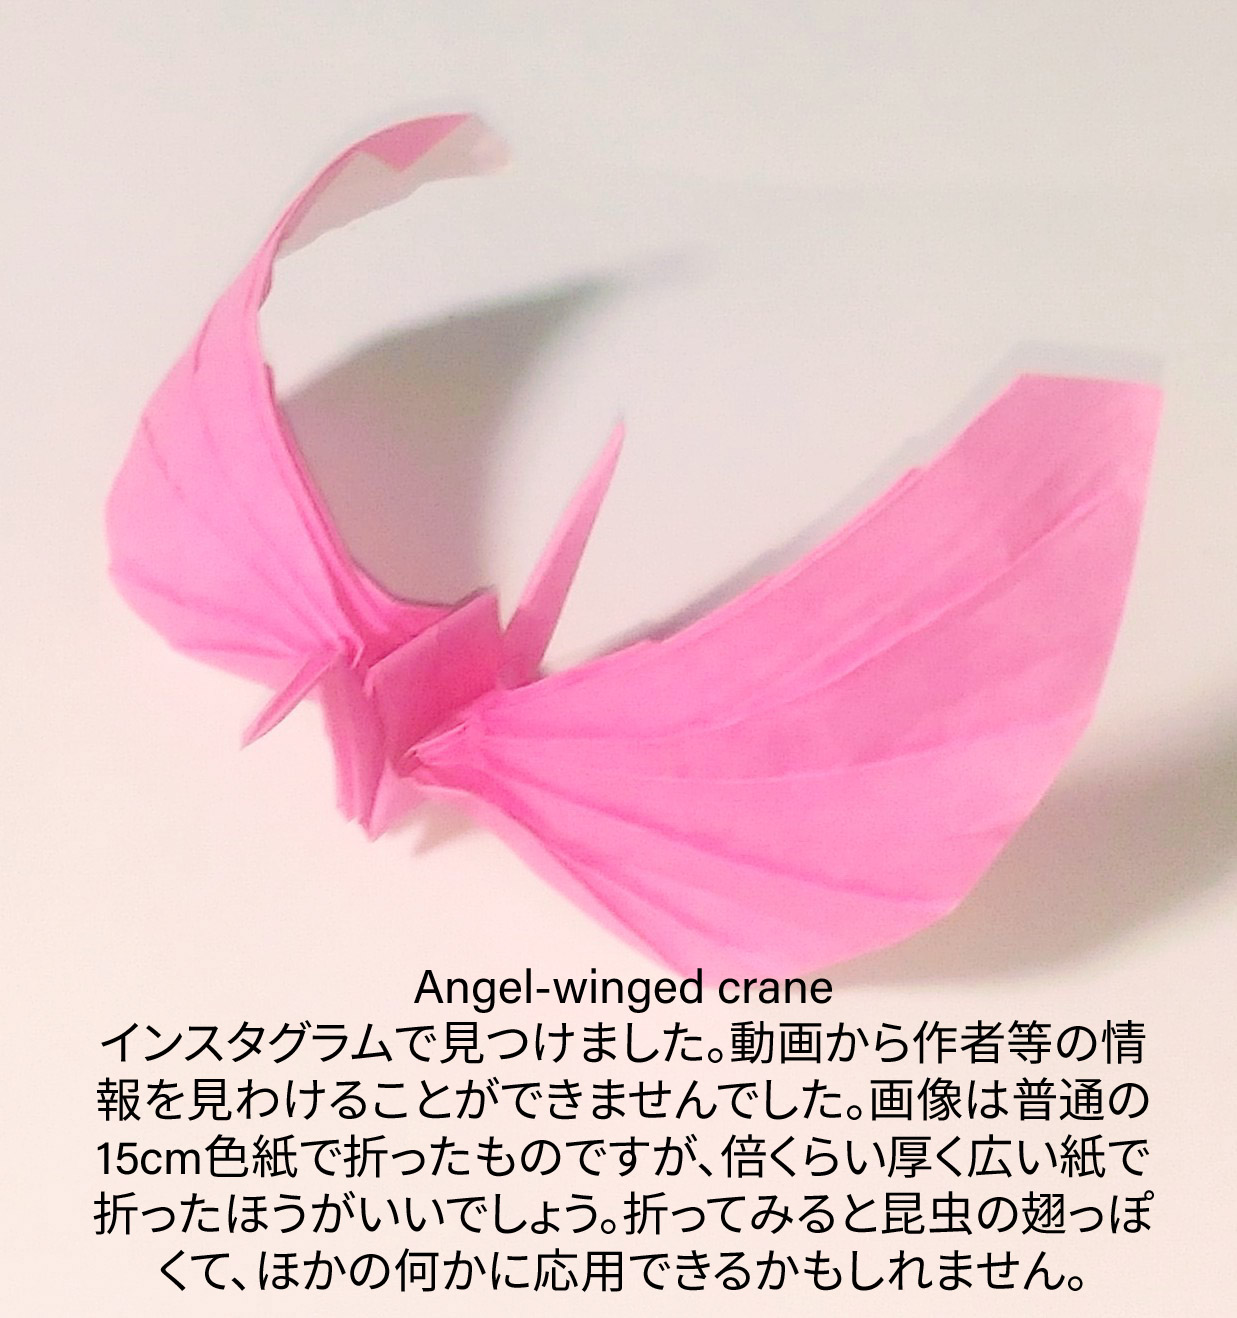 2023/12/08(Fri) 19:22「Angel-winged crane 」川崎敏和 T.Kawasaki
（創作者 Author：不明,　製作者 Folder：川崎敏和 T.Kawasaki ,　出典 Source：https://www.instagram.com/reel/C0kJGPErHV6/?igshid=MTc4MmM1YmI2Ng==）
 インスタグラムで見つけました。 動画から作者等の情報を見わけることができませんでした。画像は普通の15cm色紙で折ったものですが、倍くらい厚く広い紙で折ったほうがいいでしょう。 　折ってみるみると昆虫の翅っぽく、他に応用できるかもしれません。 https://www.instagram.com/reel/C0kJGPErHV6/?igshid=MTc4MmM1YmI2Ng==